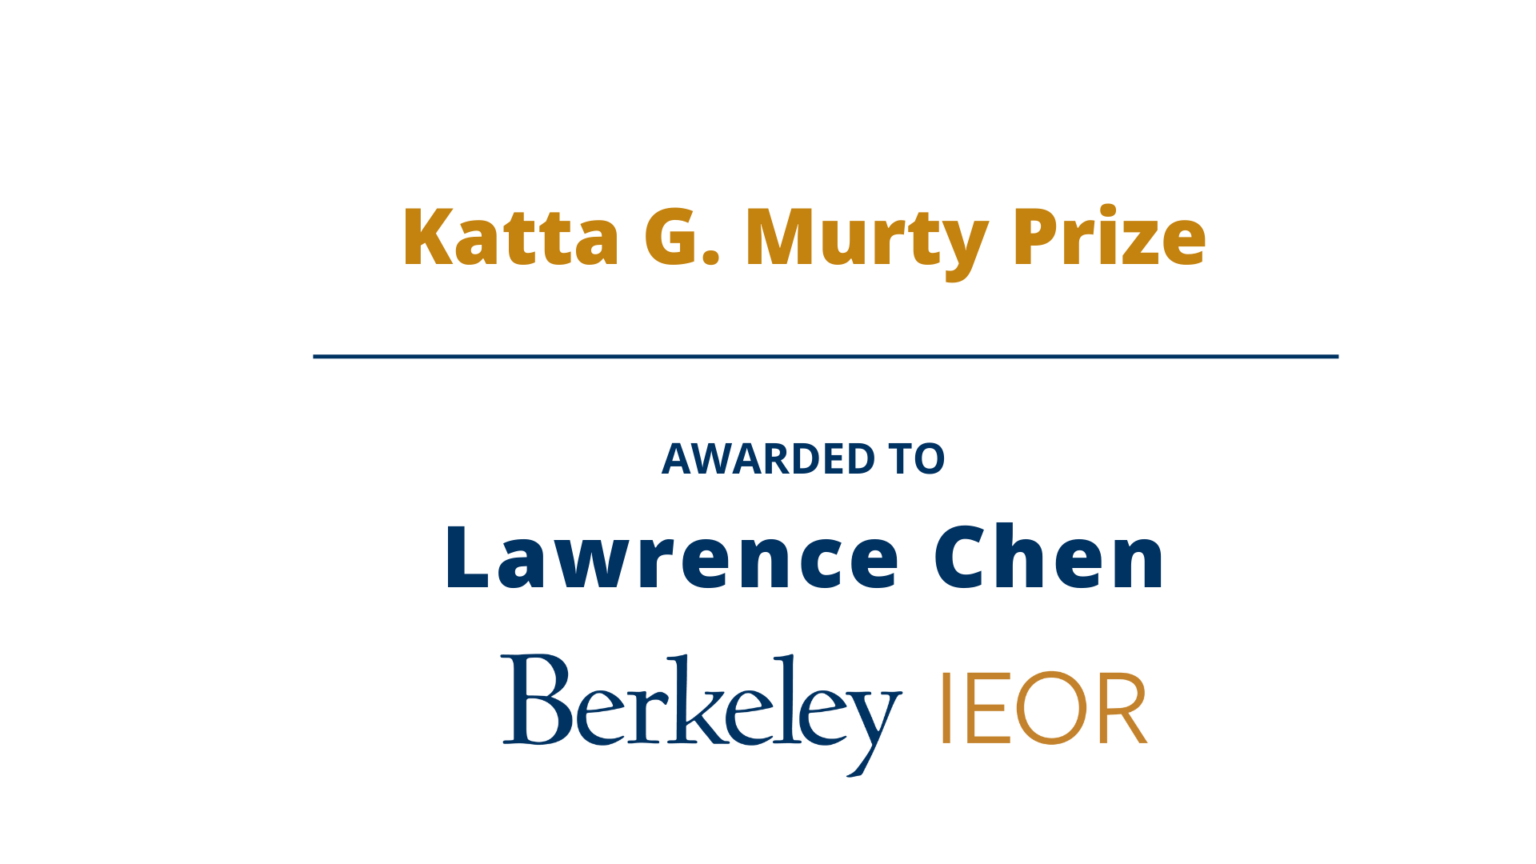 Lawrence Chen, Katta G. Murty Prize